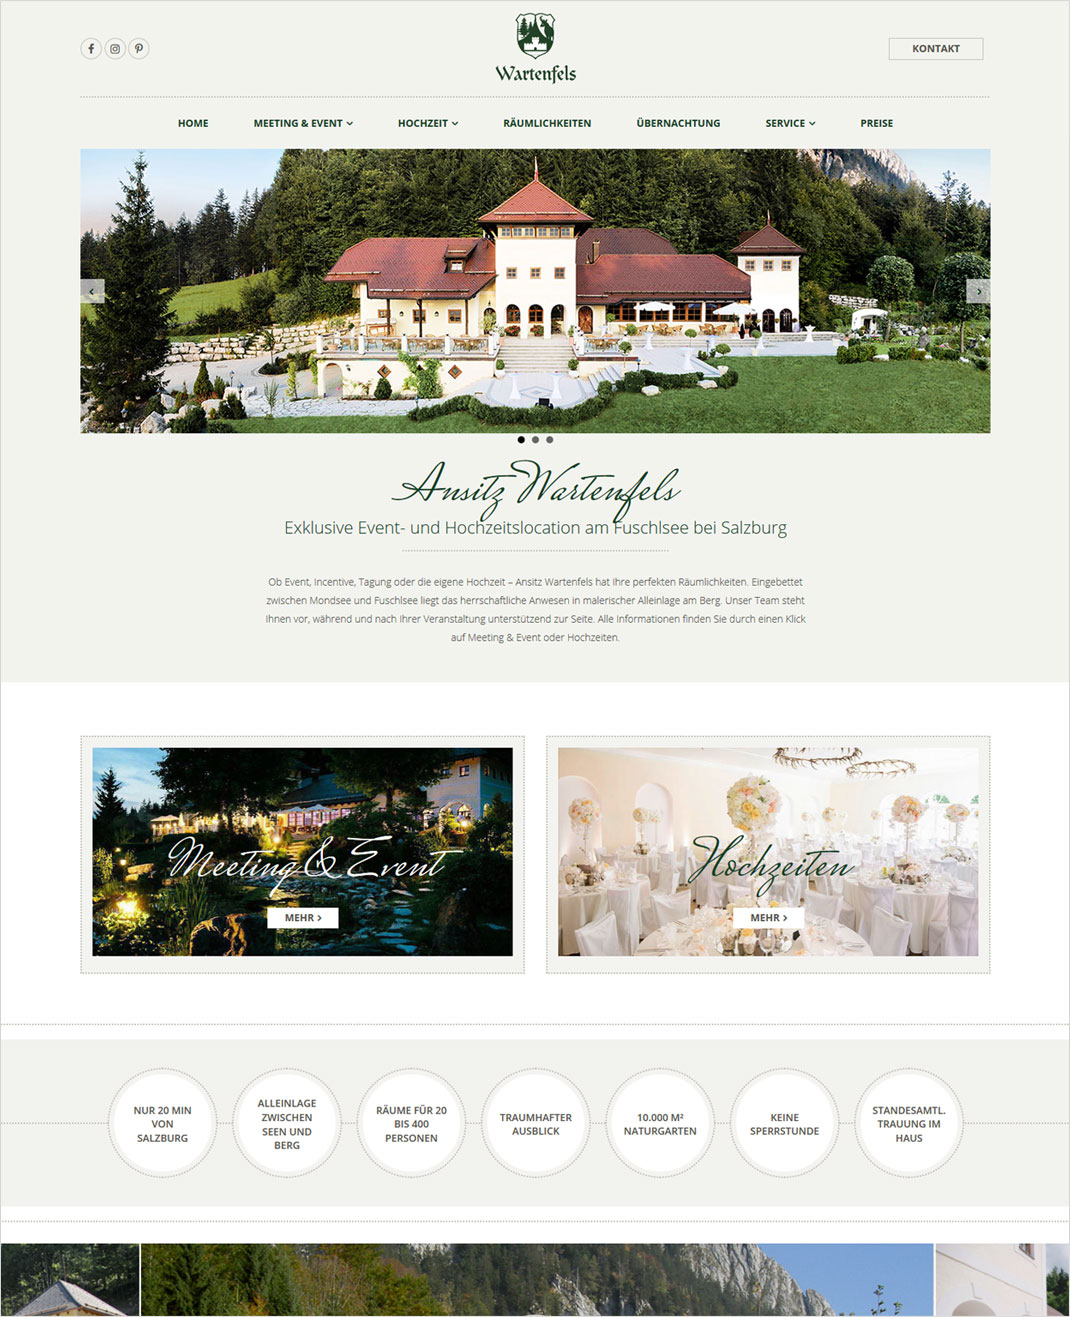 Screen der neuen Webseite der exklusiven Eventlocation Wartenfels am Fuschlsee bei Salzburg